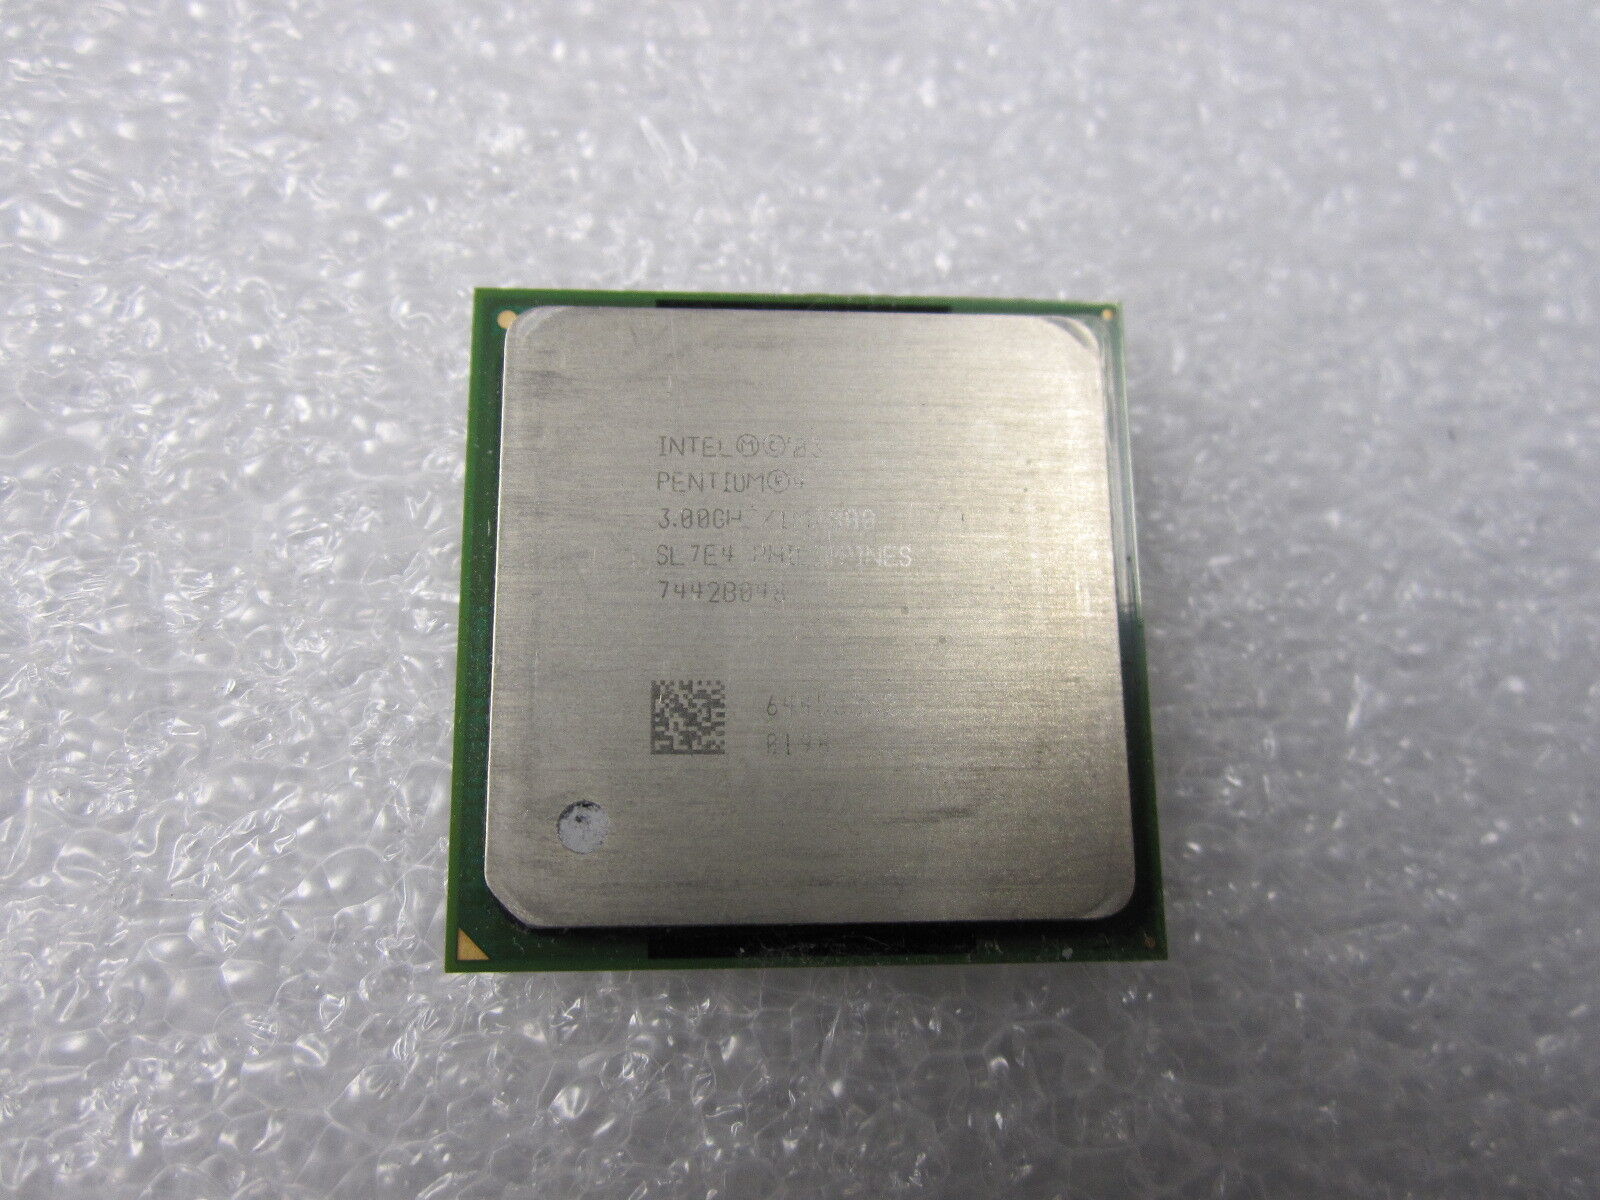 Primary image for Intel SL7E4 3.00GHZ/1M/800 Pentium 4 Socket 478 CPU-
show original title

Ori...